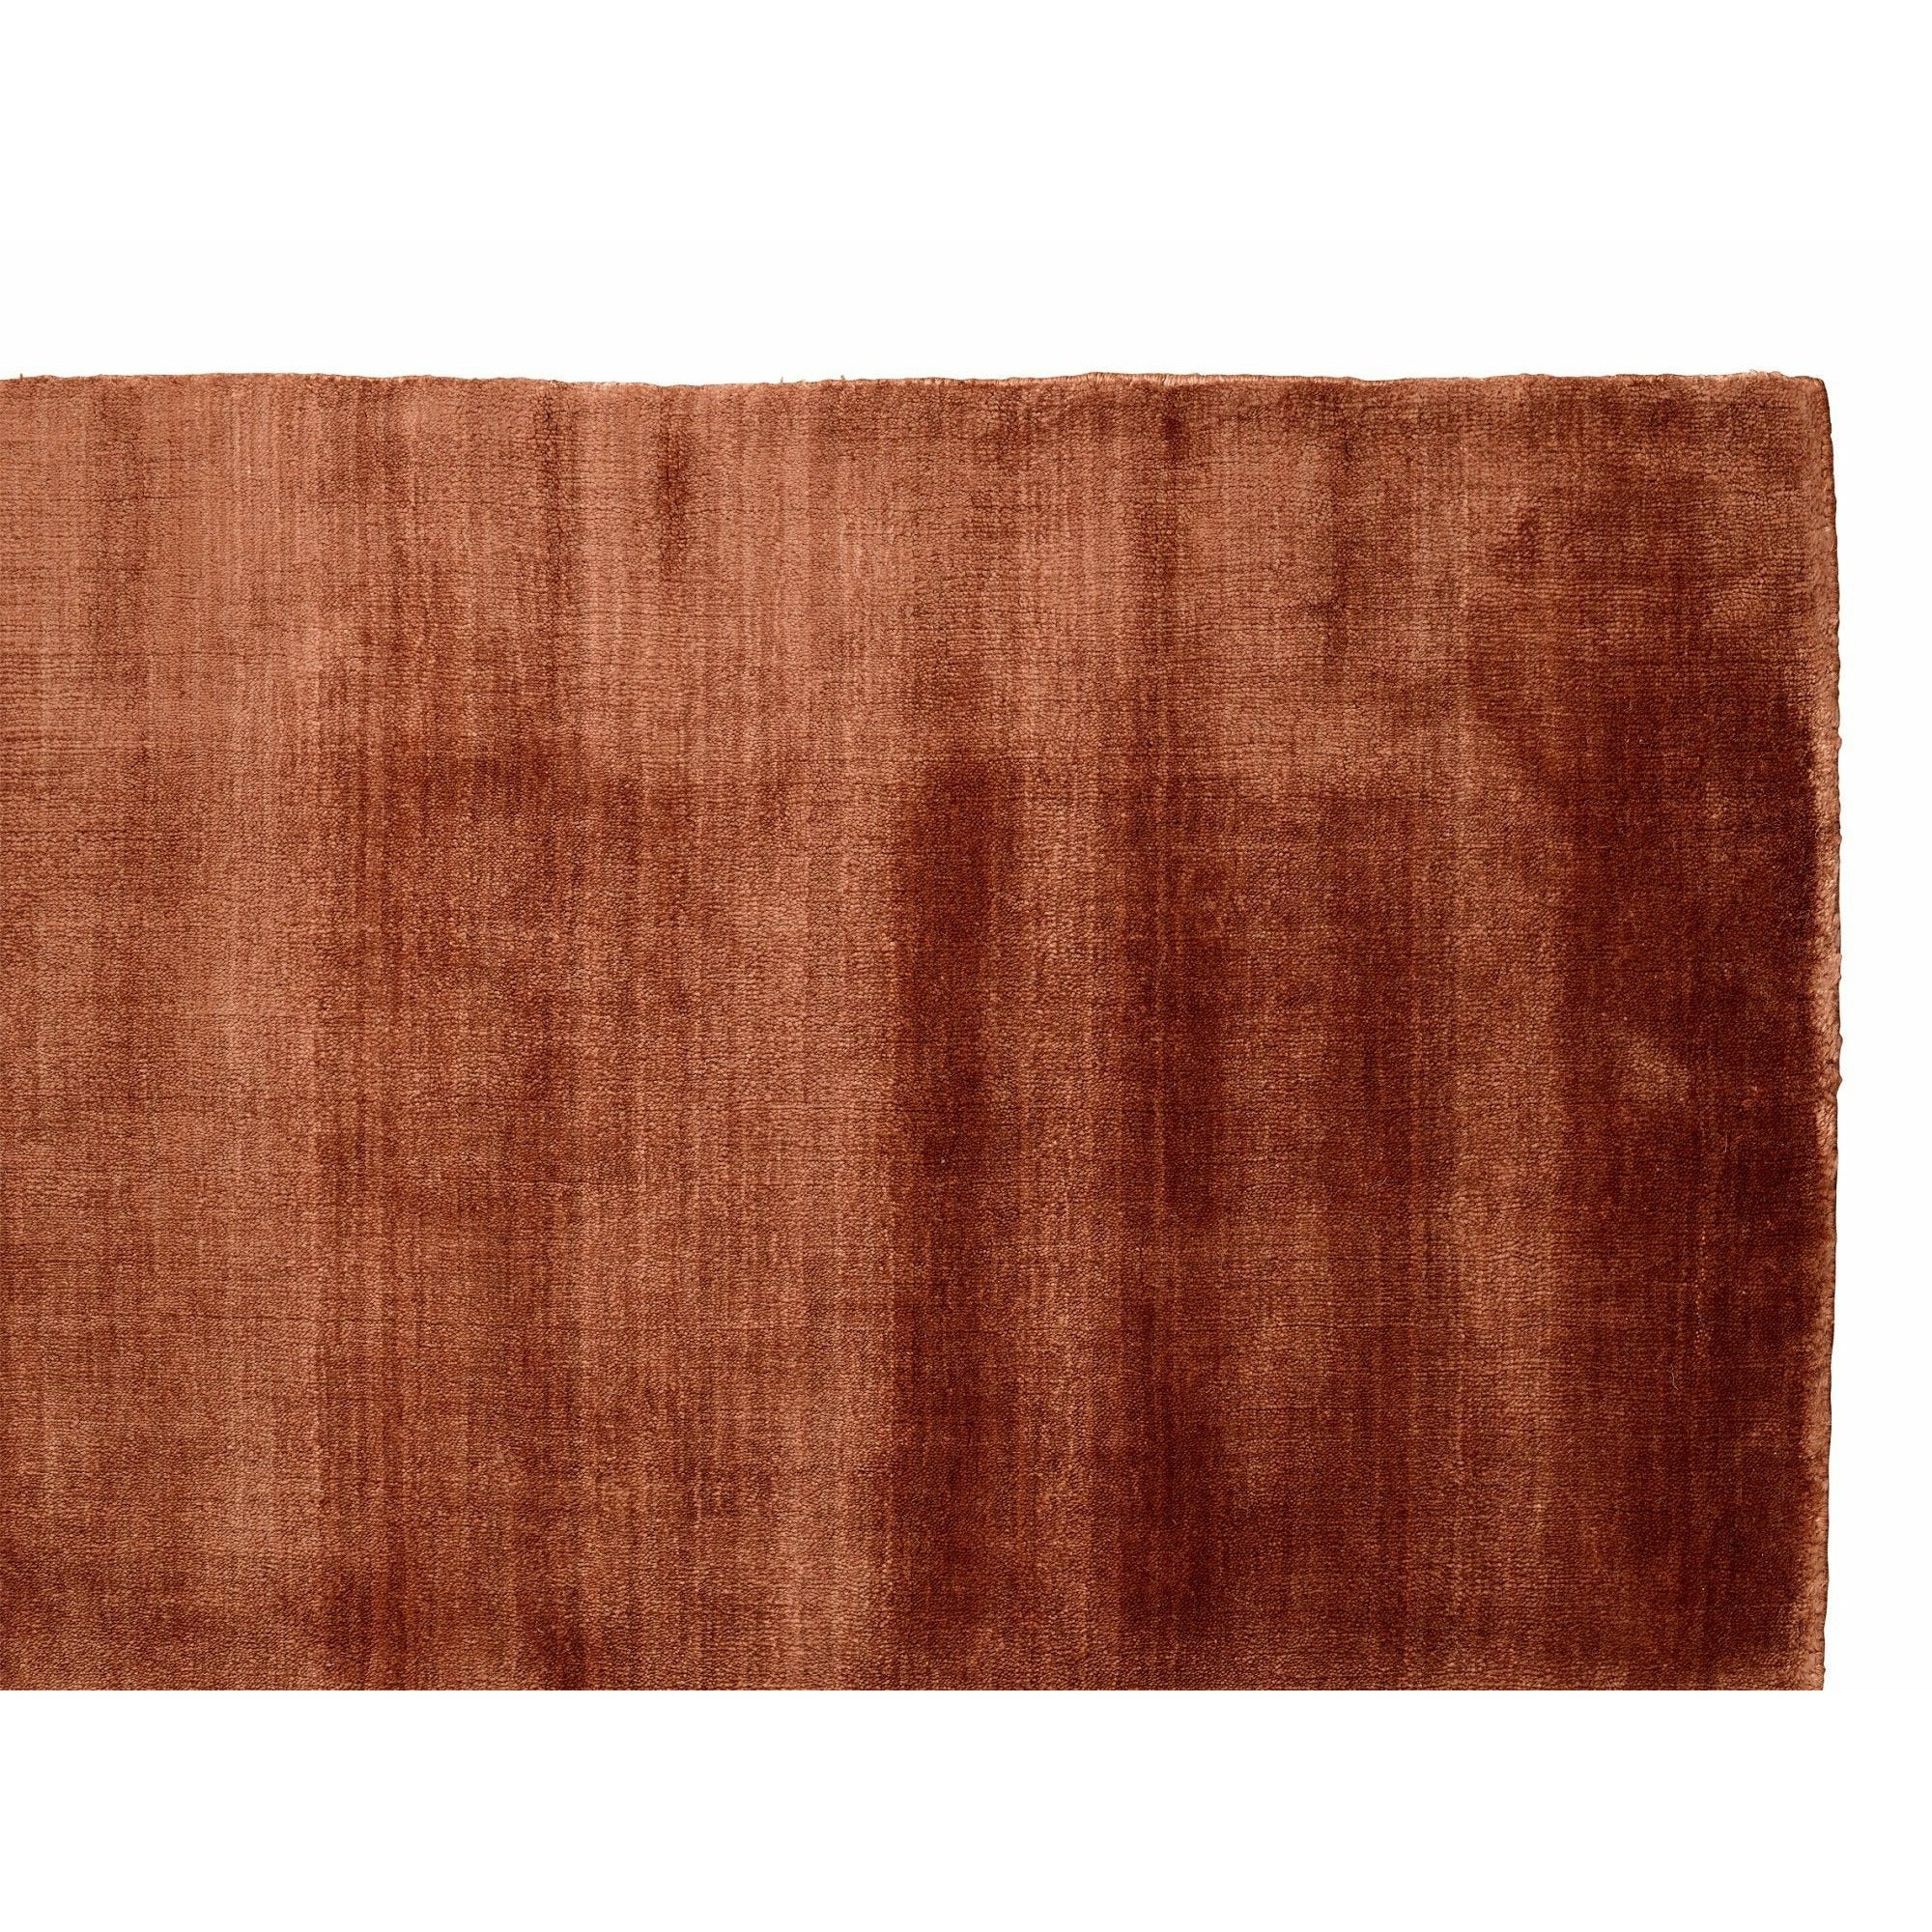 Massimo Bambu -mattan koppar, 200x300 cm